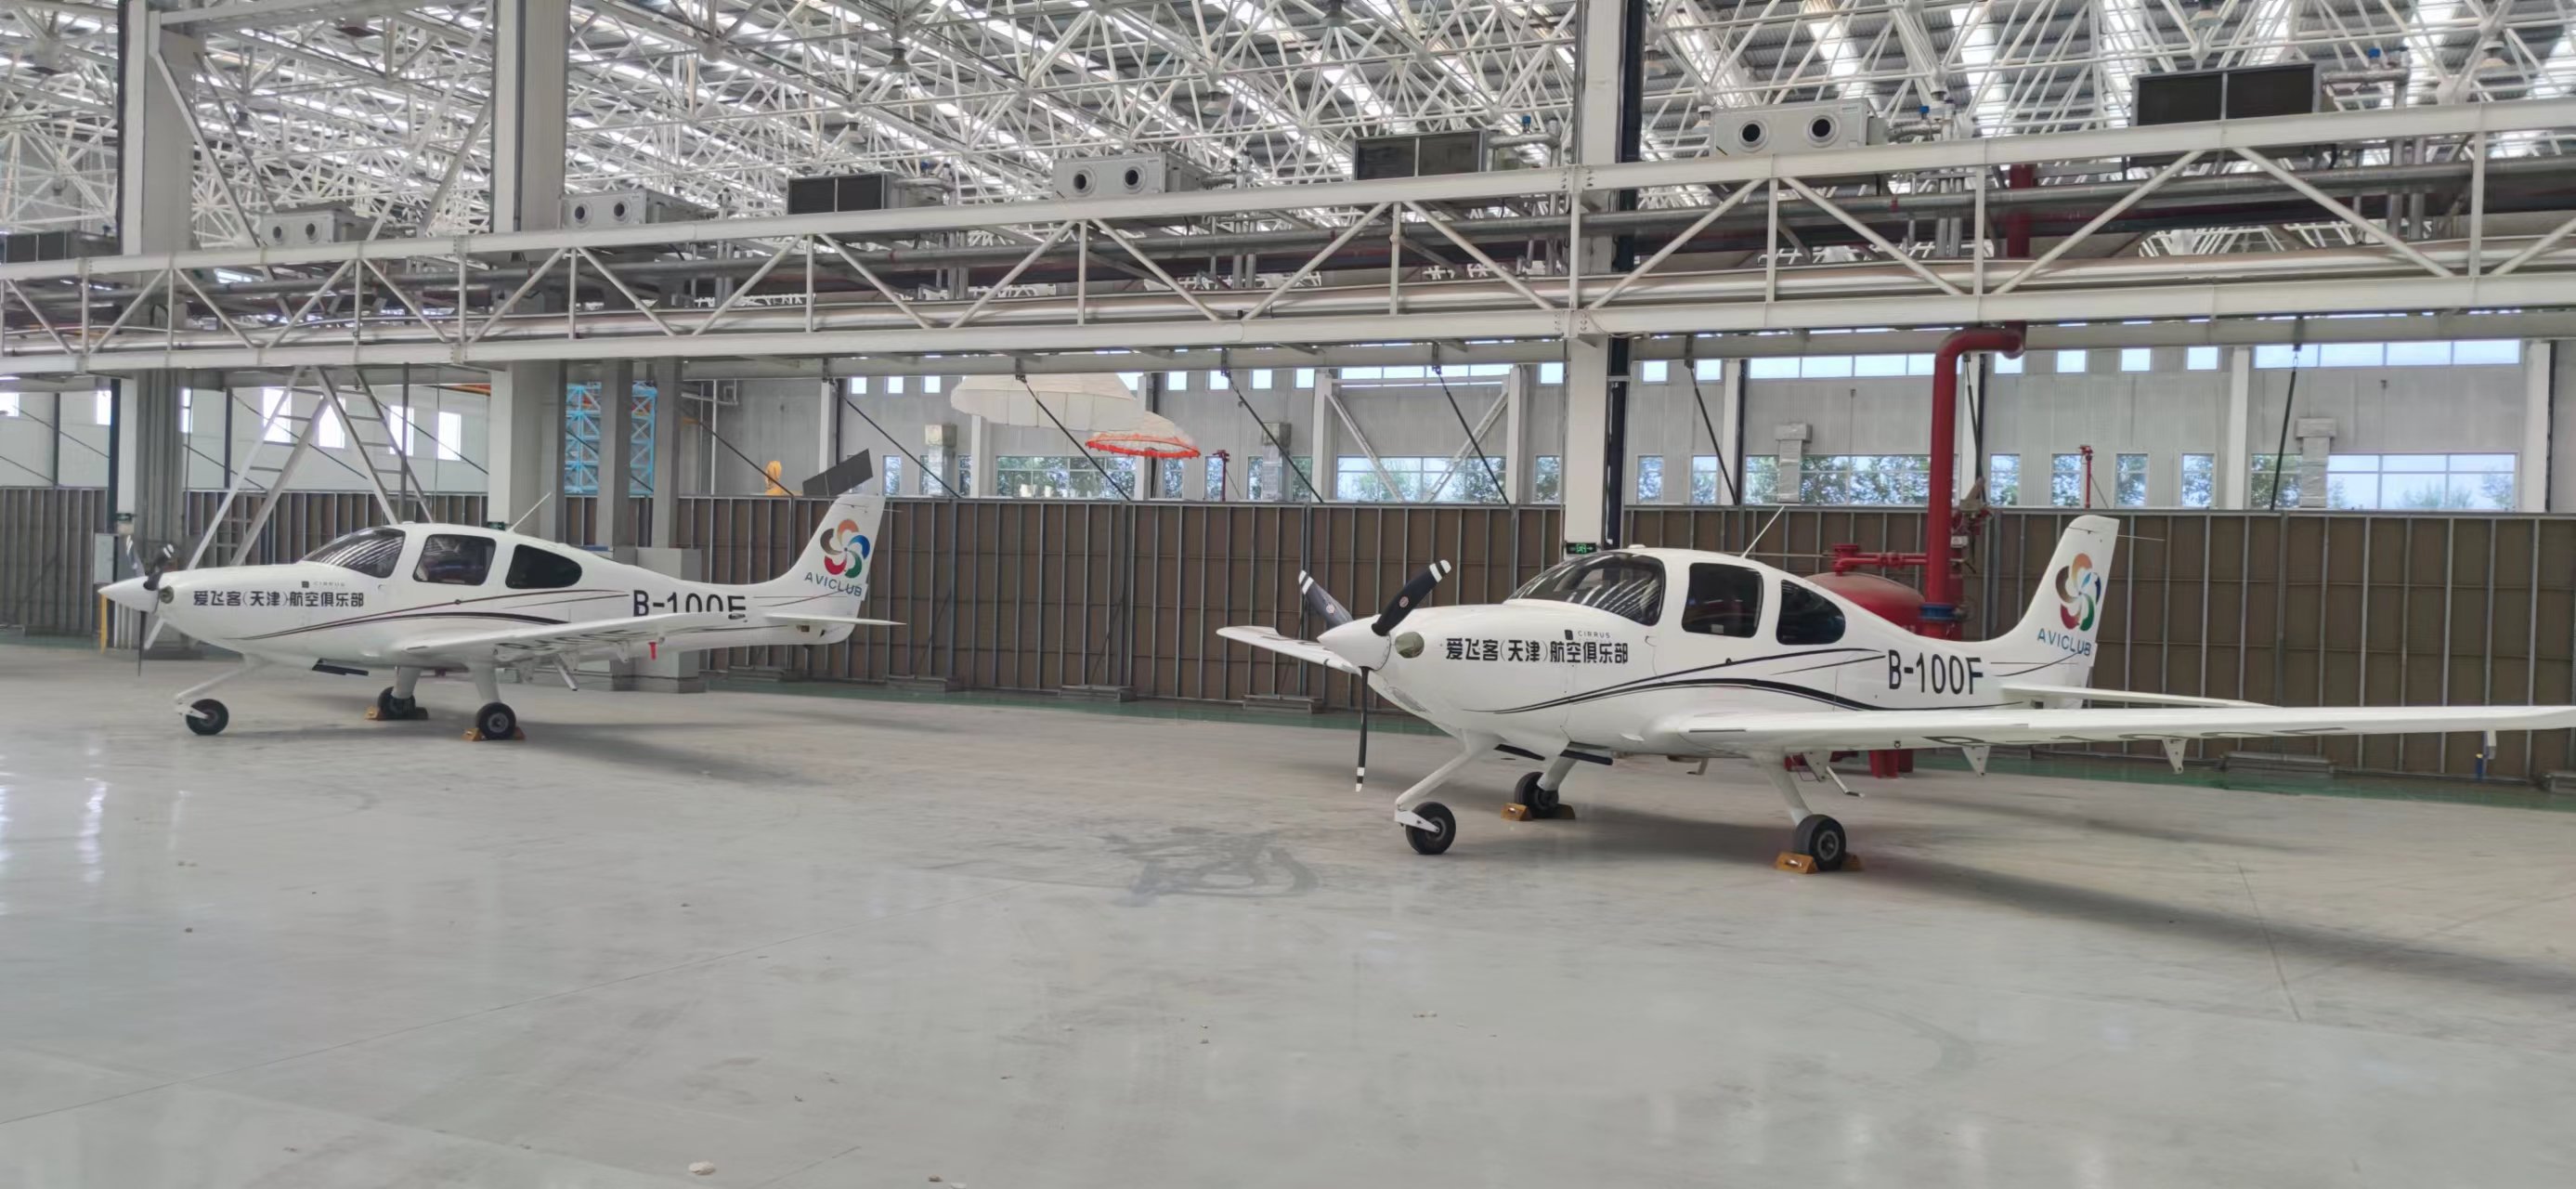 爱飞客航空俱乐部公司部分资产一架西锐SR20飞机B100F出售招标